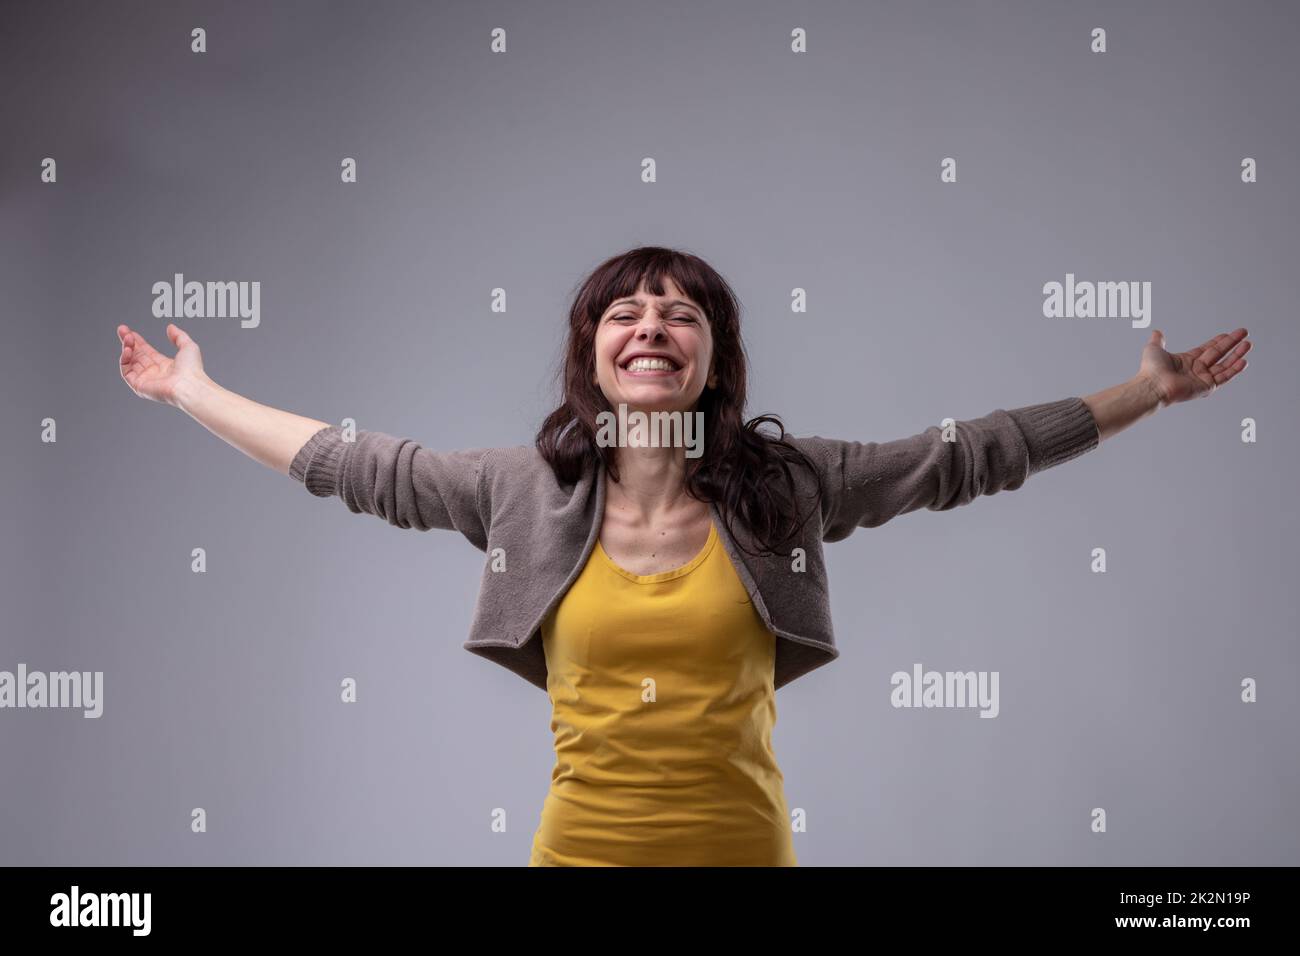 Happy elated woman celebrating Stock Photo